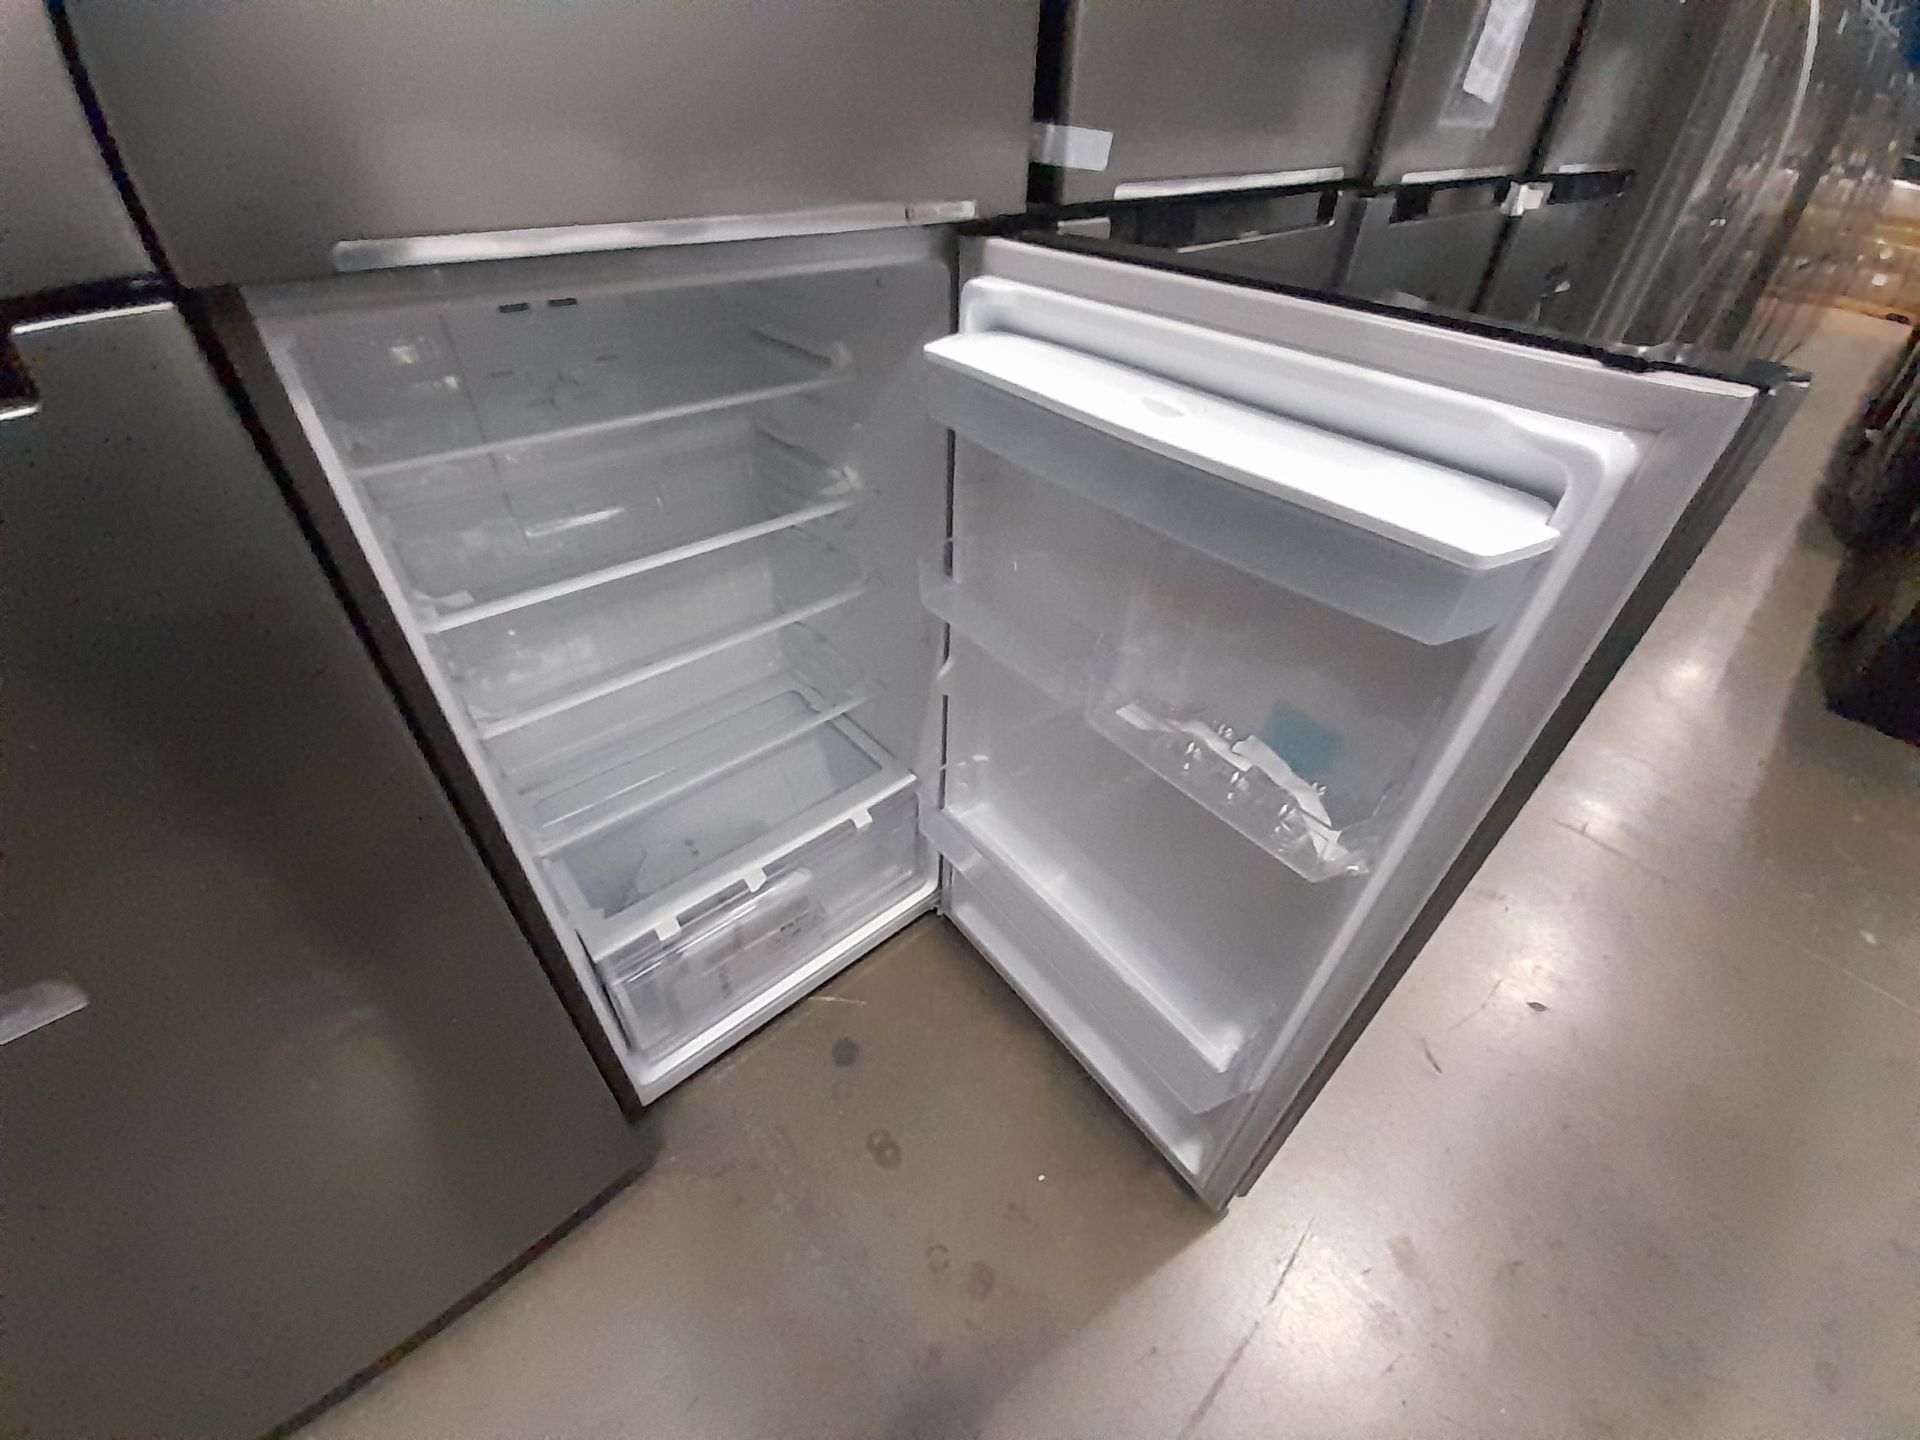 Lote de 2 refrigeradores contiene: 1 refrigerador Marca SAMSUNG, Modelo RT38A57IJS9, Serie 02691M, - Image 7 of 8